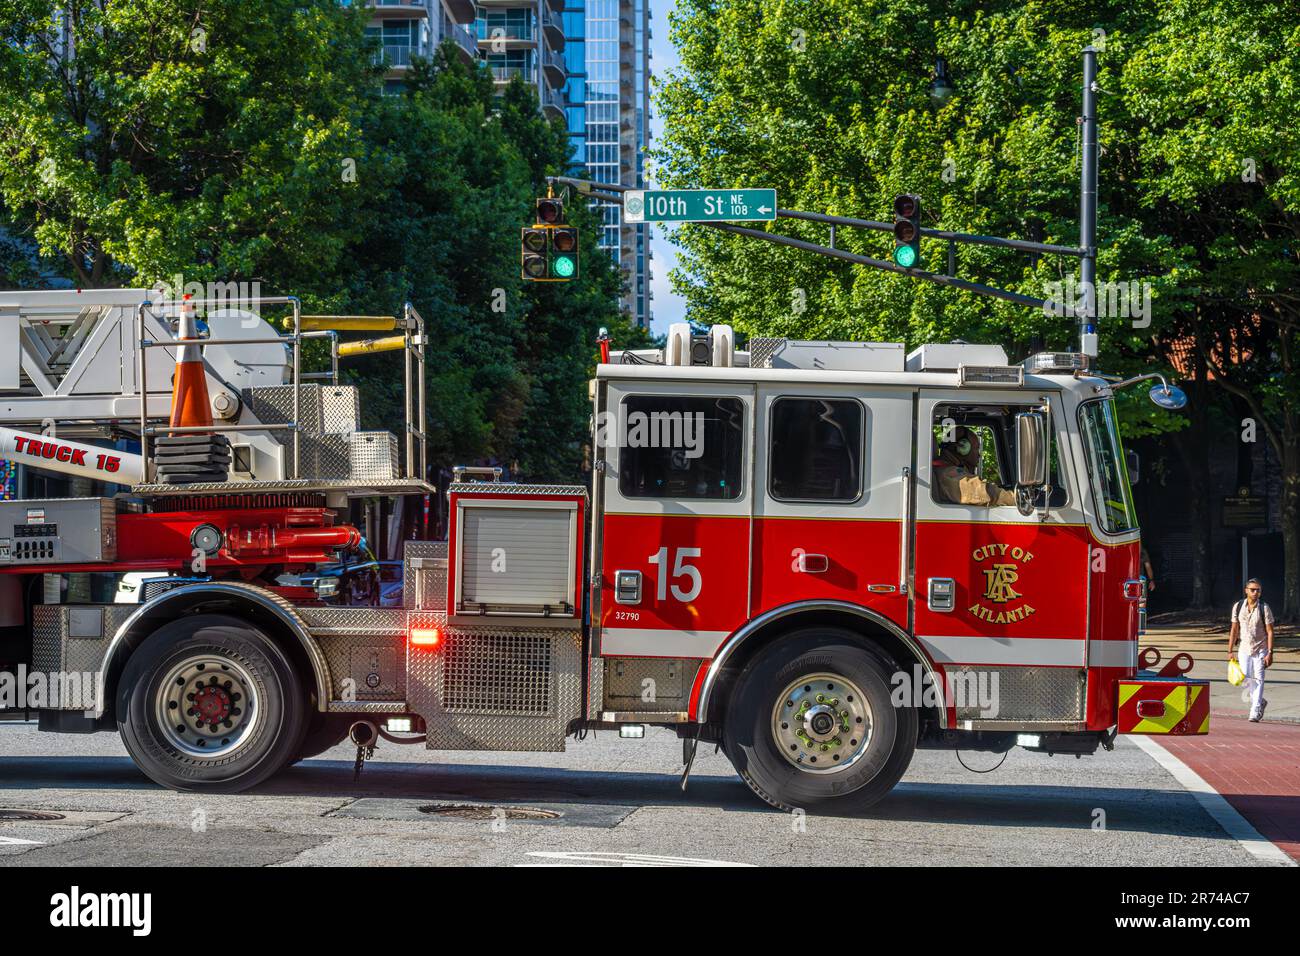 Ville d'Atlanta Service des incendies camion-échelle traversant la rue Peachtree en route vers une situation d'urgence à Midtown Atlanta, Géorgie. (ÉTATS-UNIS) Banque D'Images